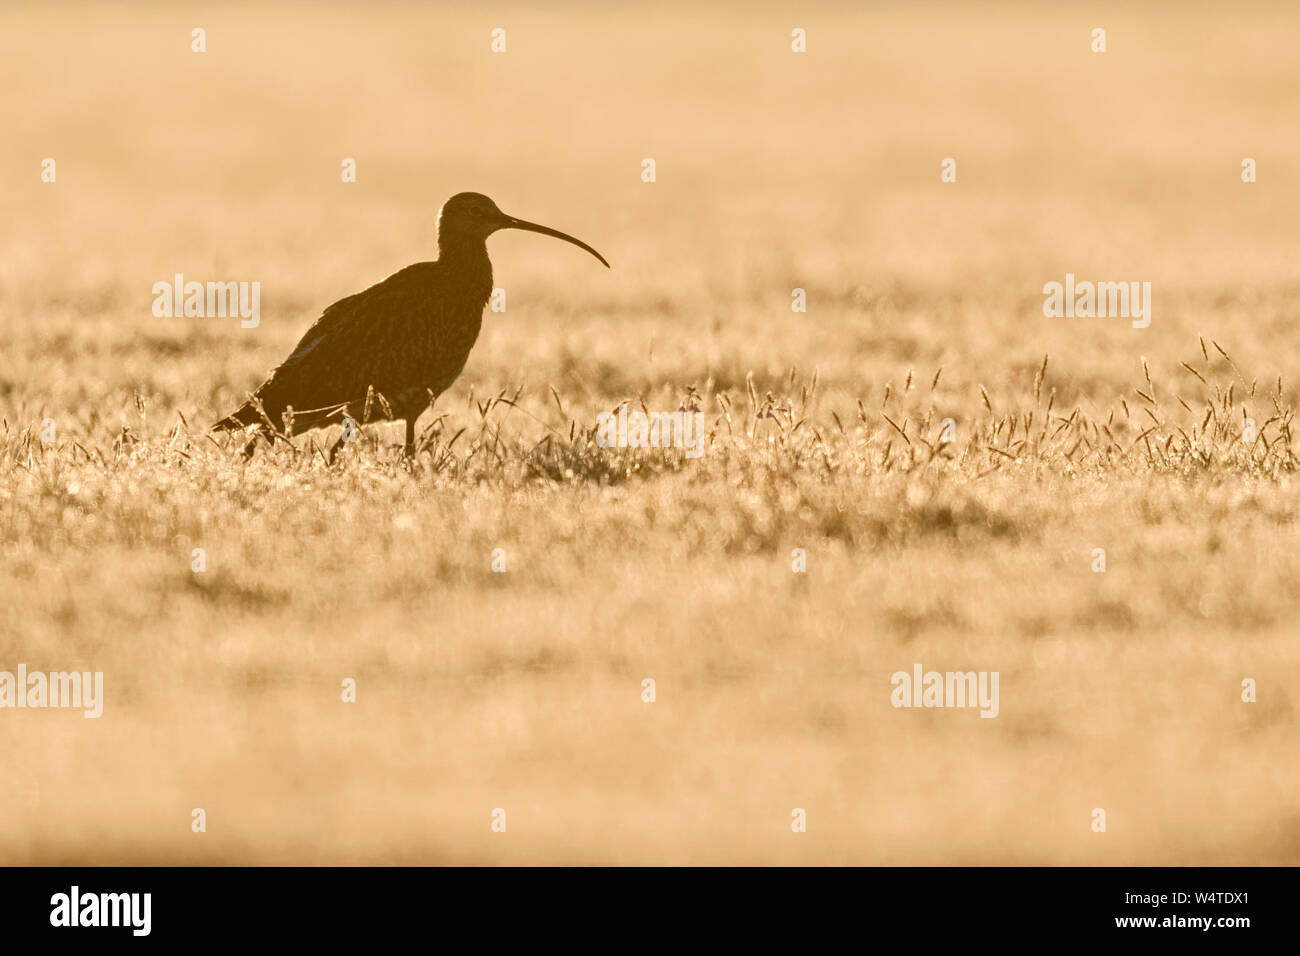 Zarapito euroasiático / Grosser Brachvogel ( Numenius arquata ) caminando a través de un prado húmedo de rocío matutino, contraluz, Moody, vida silvestre, Europa Foto de stock